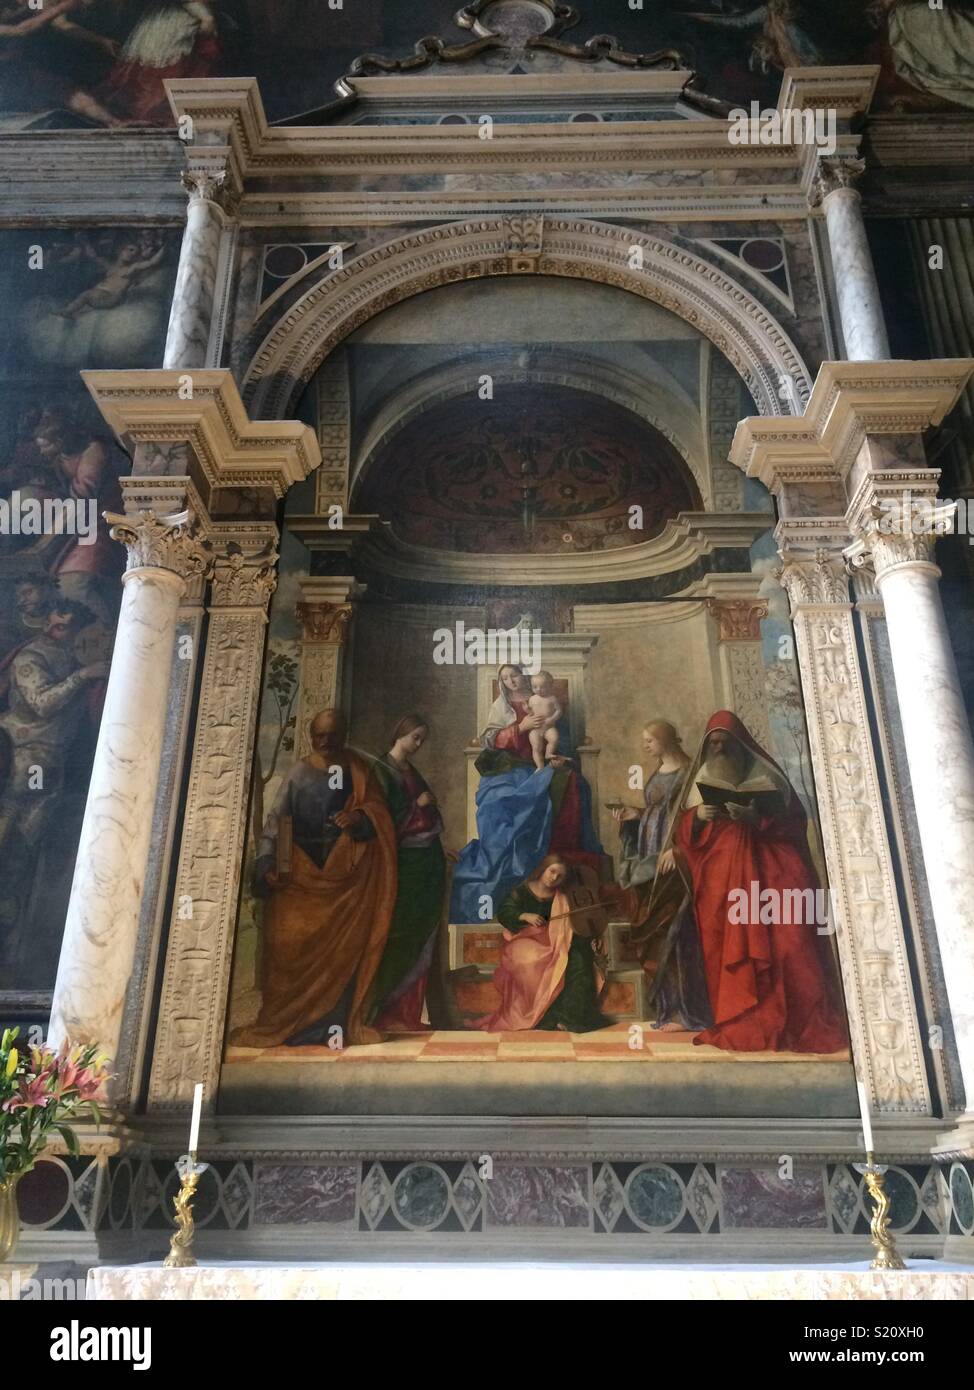 The ‘Sacra Conversazione’ by Giovanni Bellini in the Chiesa di San Zaccaria in Venice Stock Photo